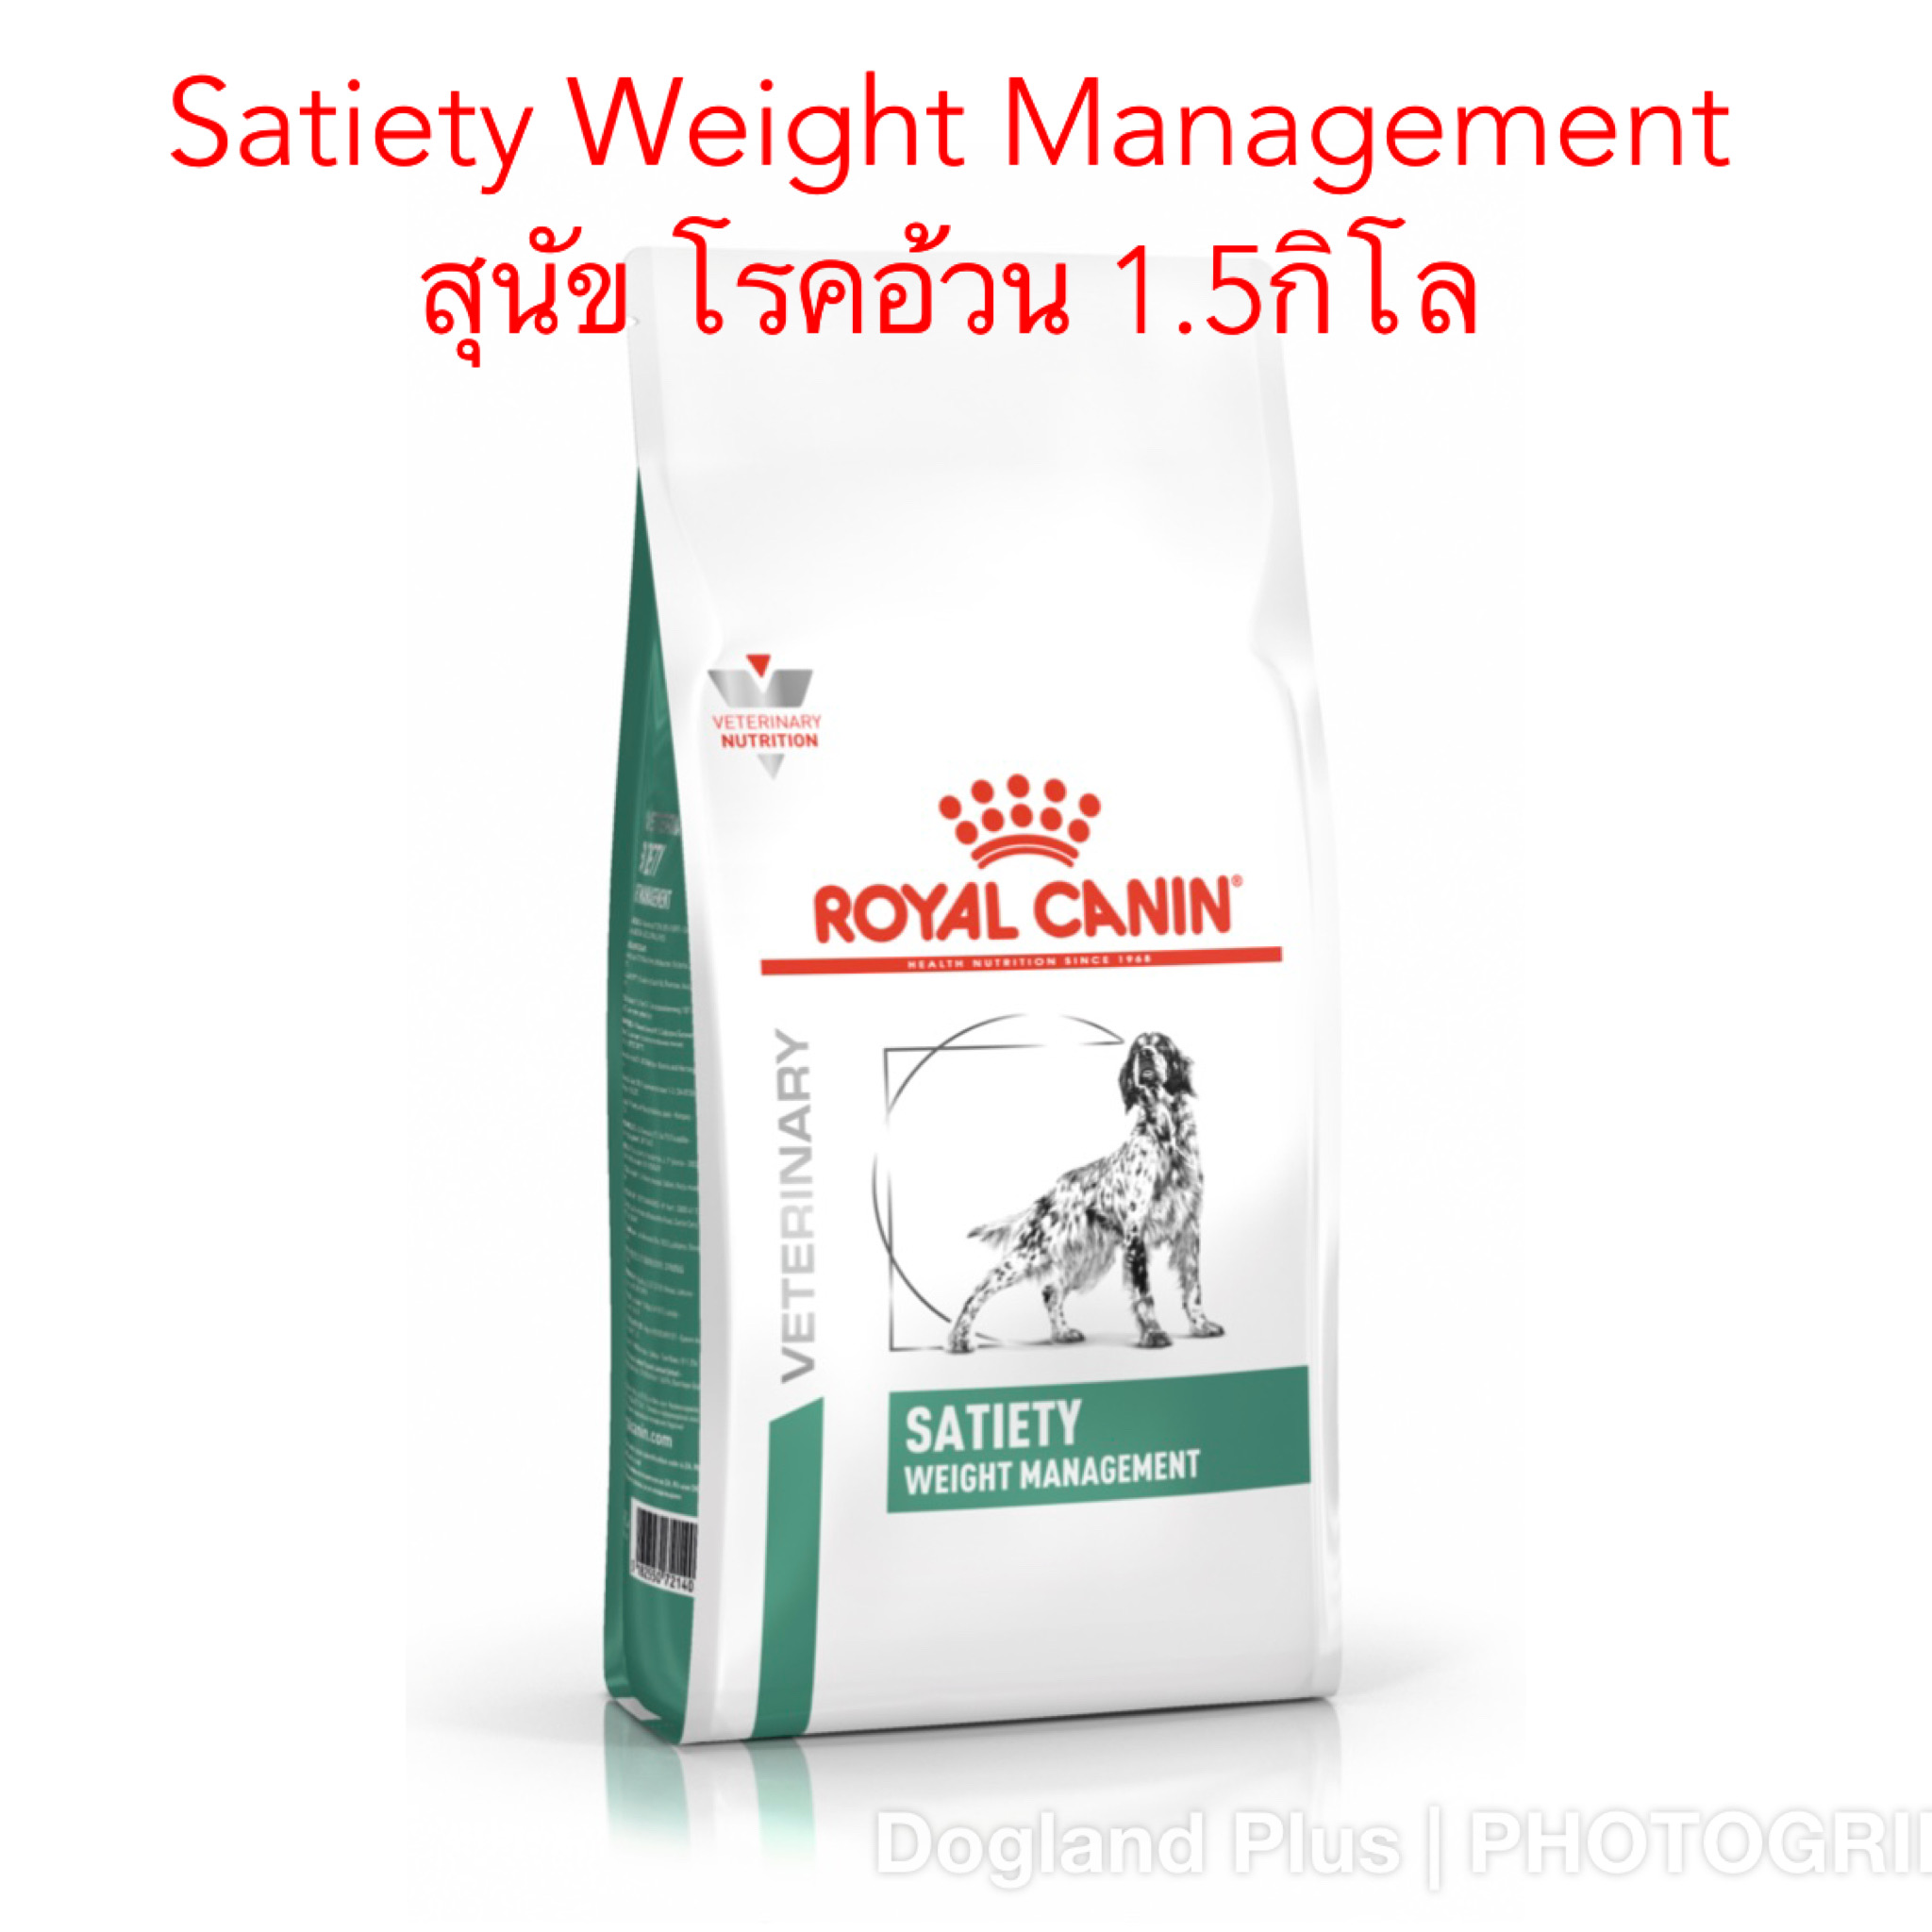 Royal Canin Satiety Weight Management สุนัข โรคอ้วน 1.5 กิโล